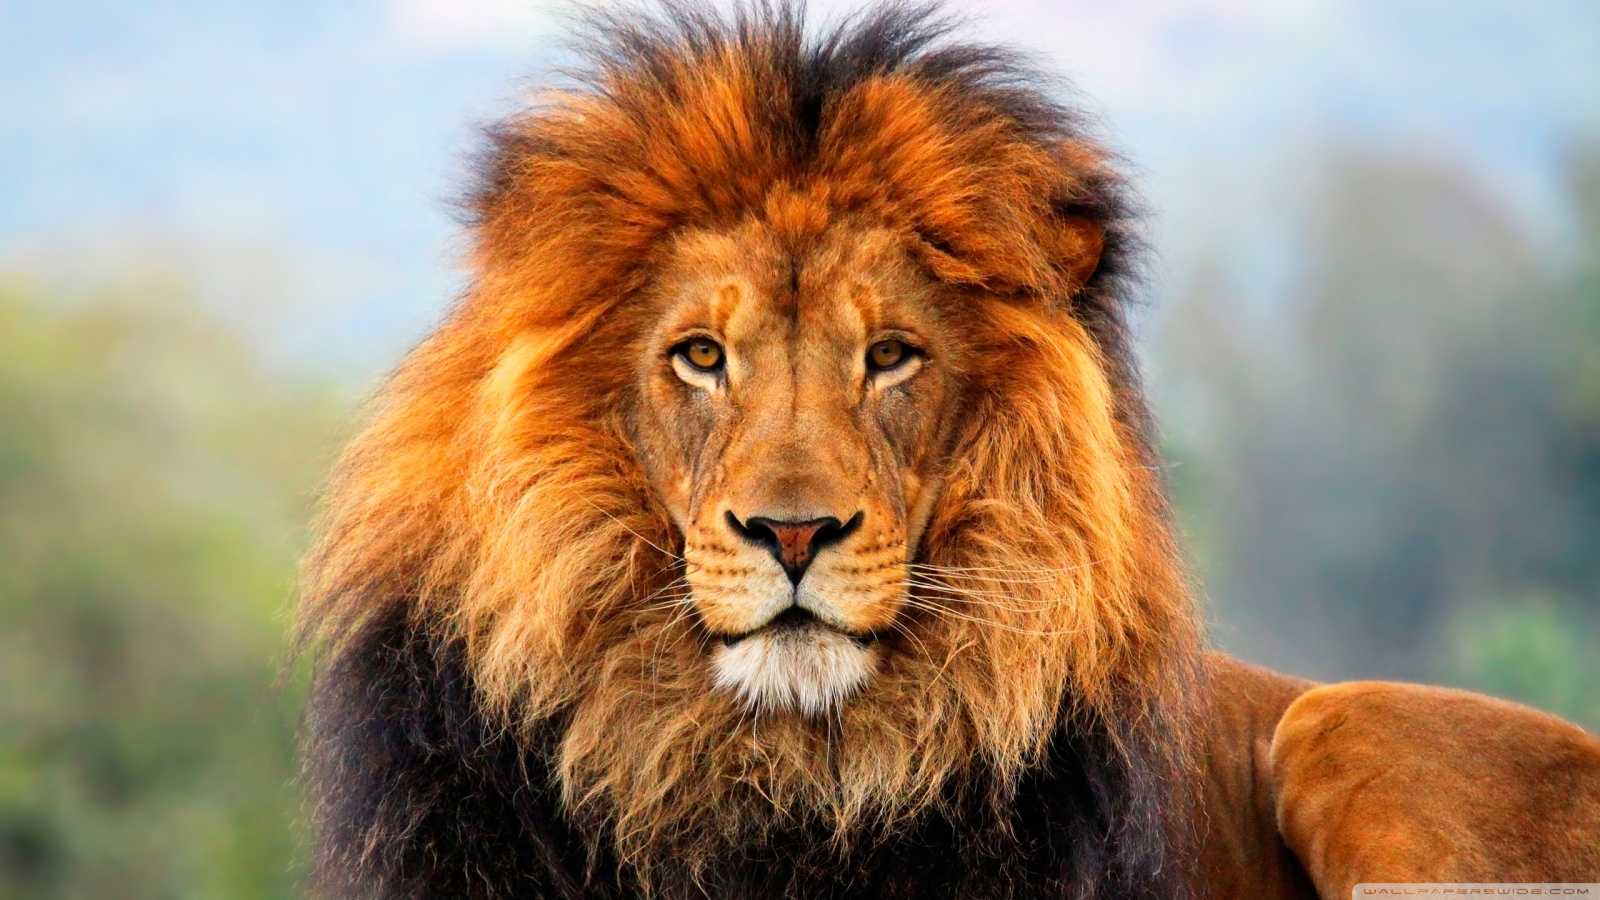 Πακιστανός επιστάτης αμόλησε το λιοντάρι του σε ηλεκτρολόγο που ζητούσε τα δεδουλευμένα – Τραυματίστηκε στο κεφάλι